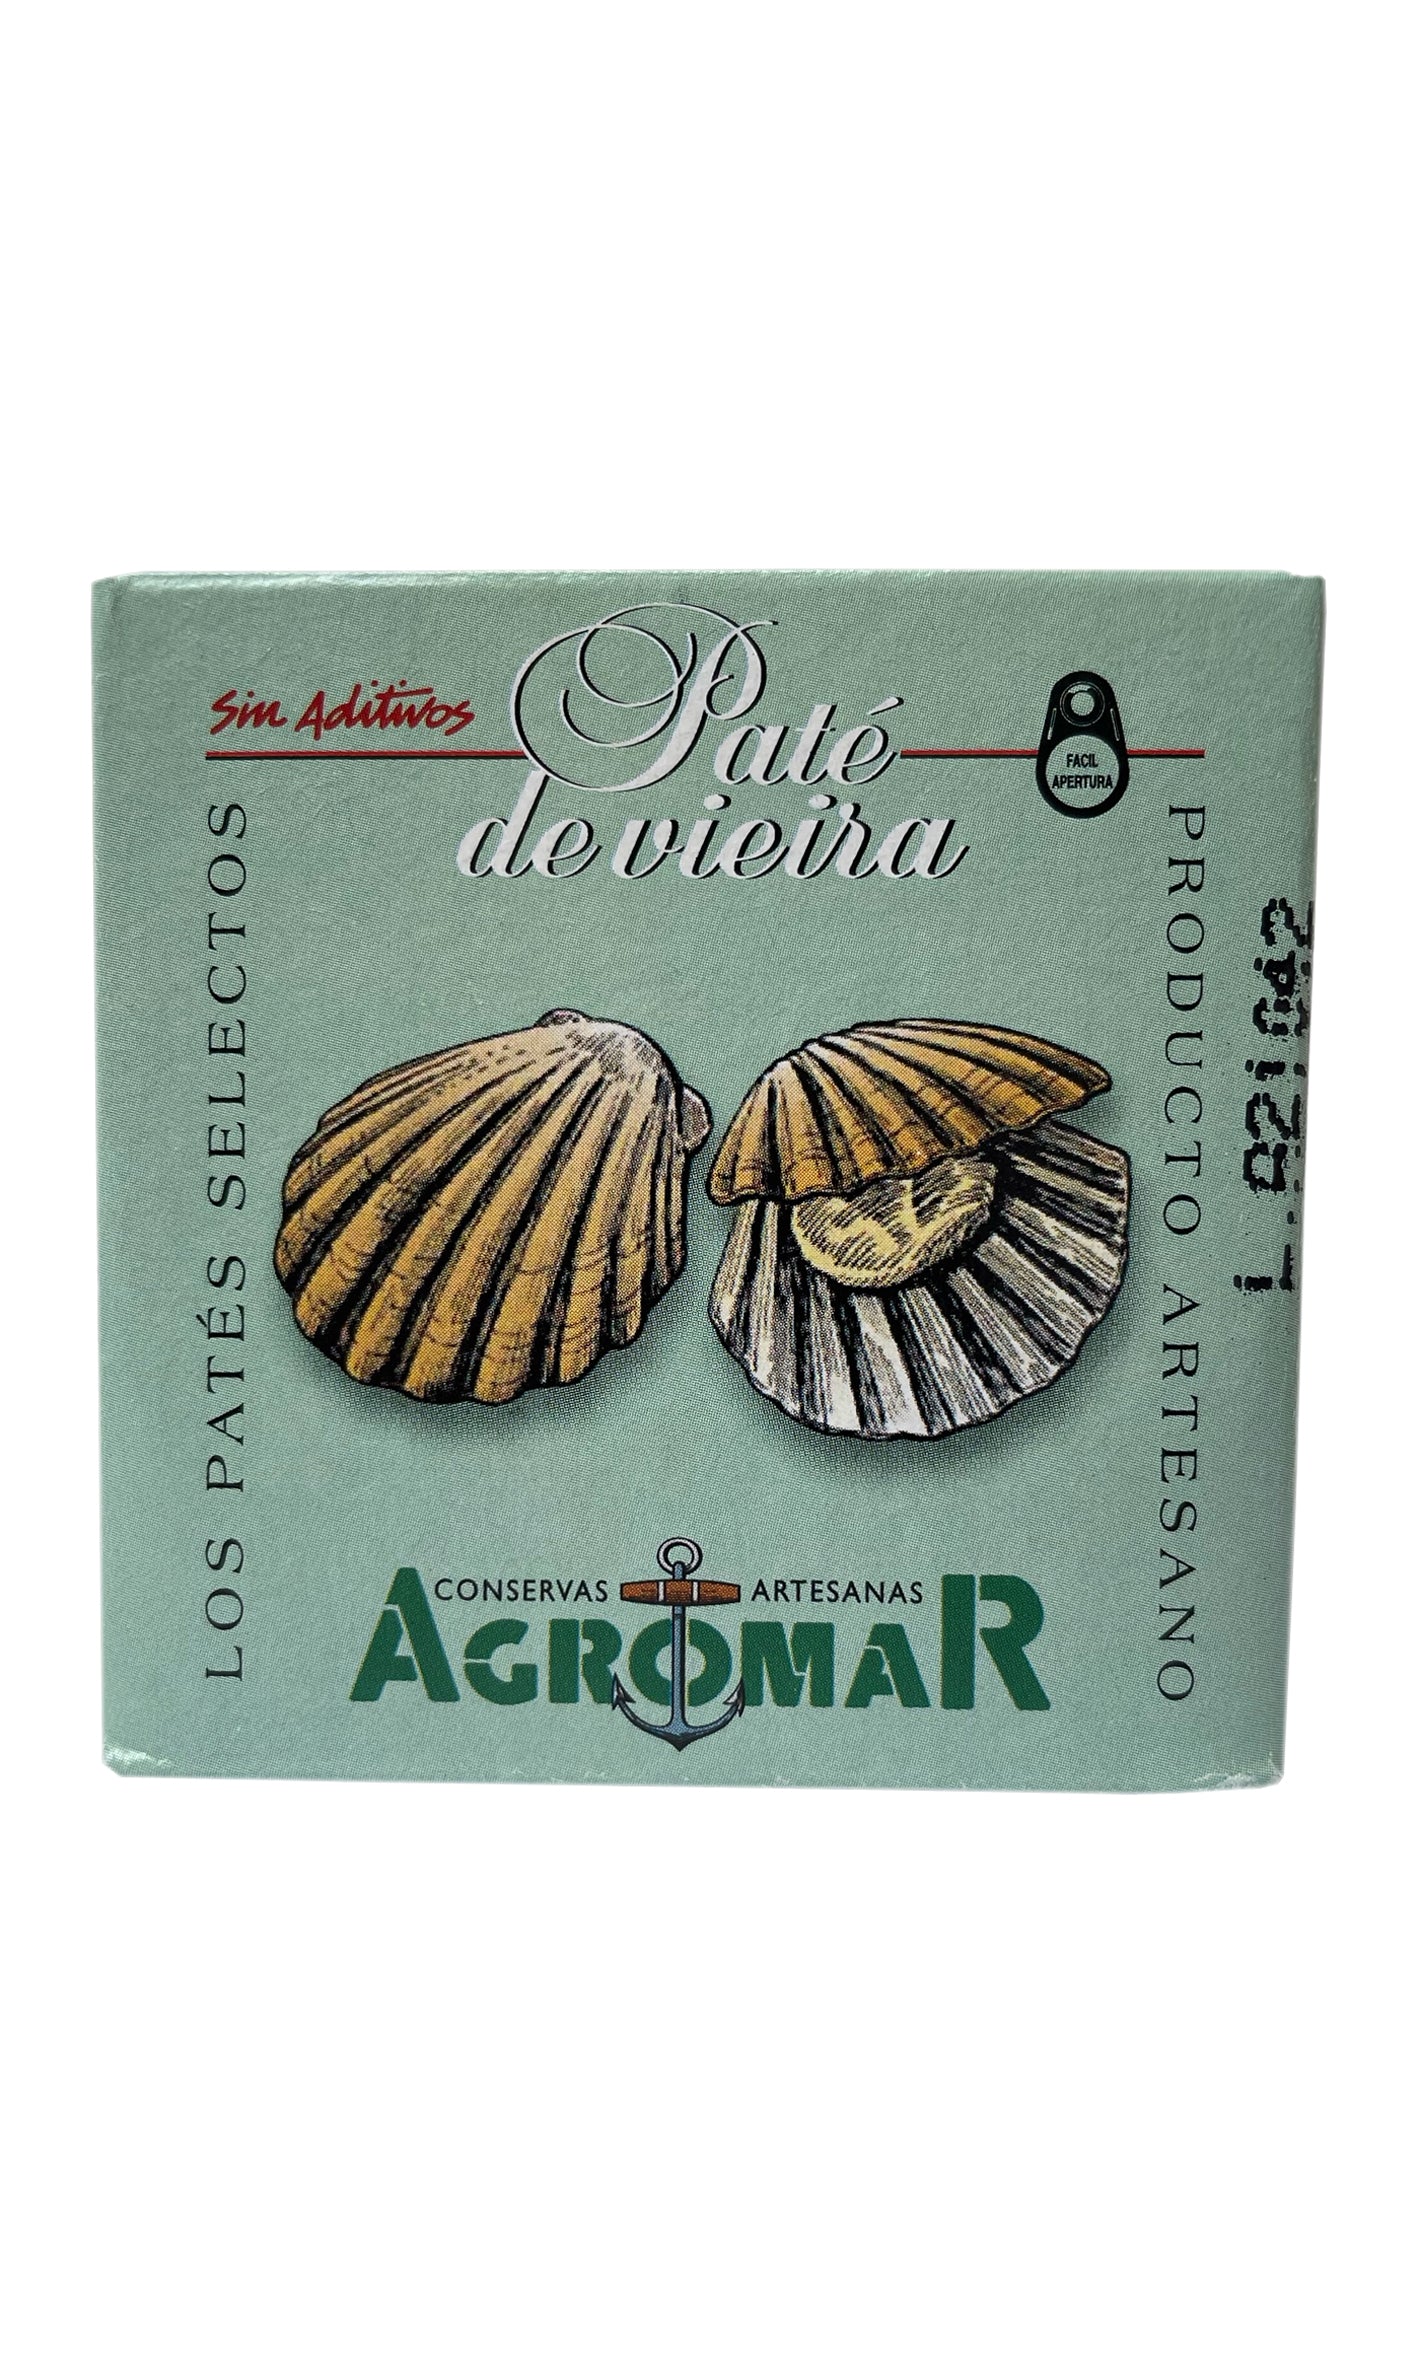 Agromar - Scallop Paté - 100g